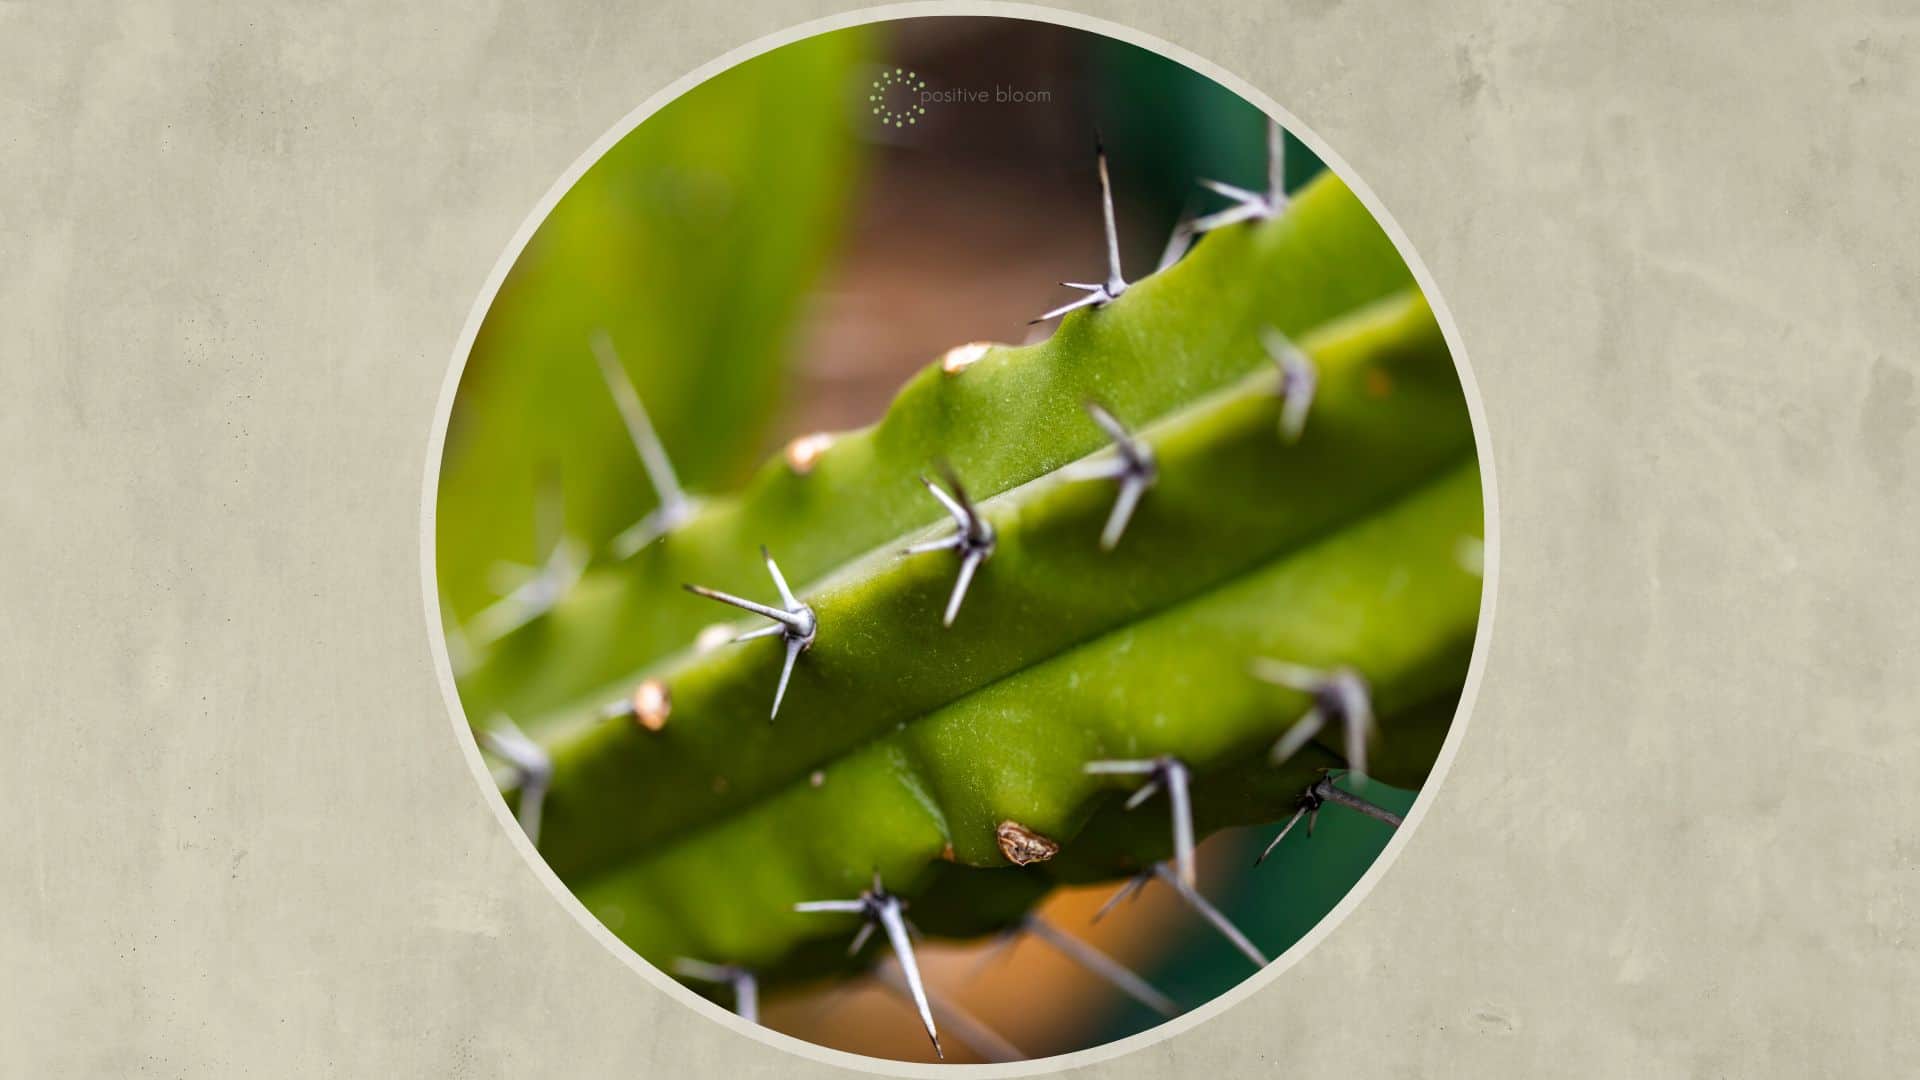 blue myrtle cactus close-up photo